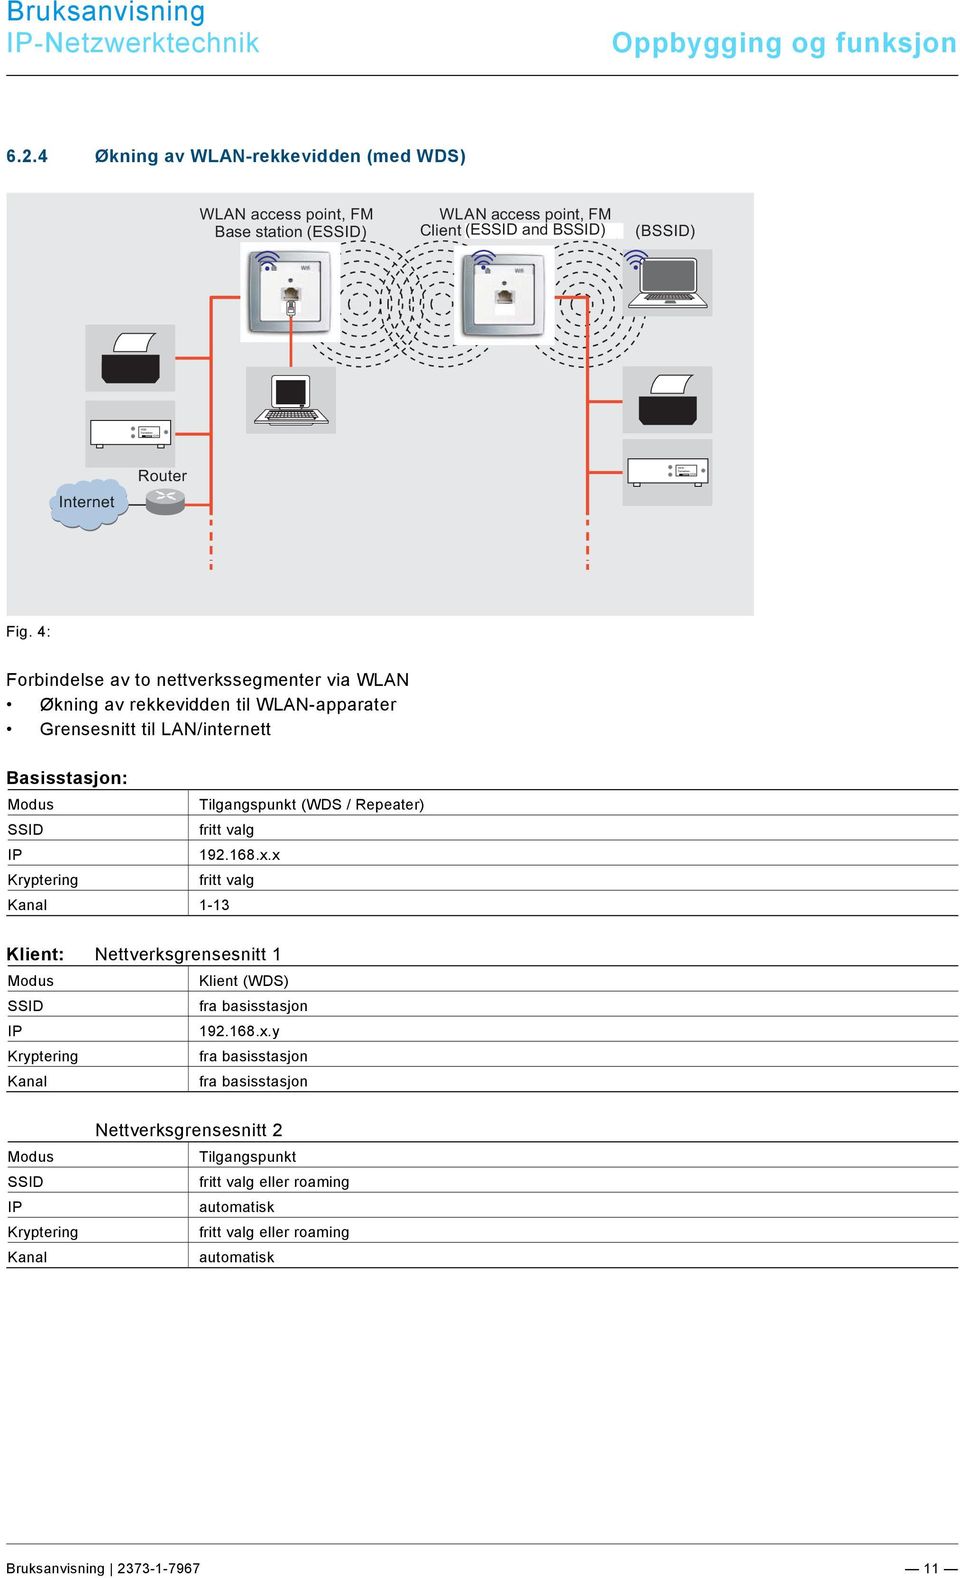 x.x Kryptering fritt valg Kanal 1-13 Klient: Nettverksgrensesnitt 1 Modus Klient (WDS) SSID fra basisstasjon IP 192.168.x.y Kryptering fra basisstasjon Kanal fra basisstasjon Modus SSID IP